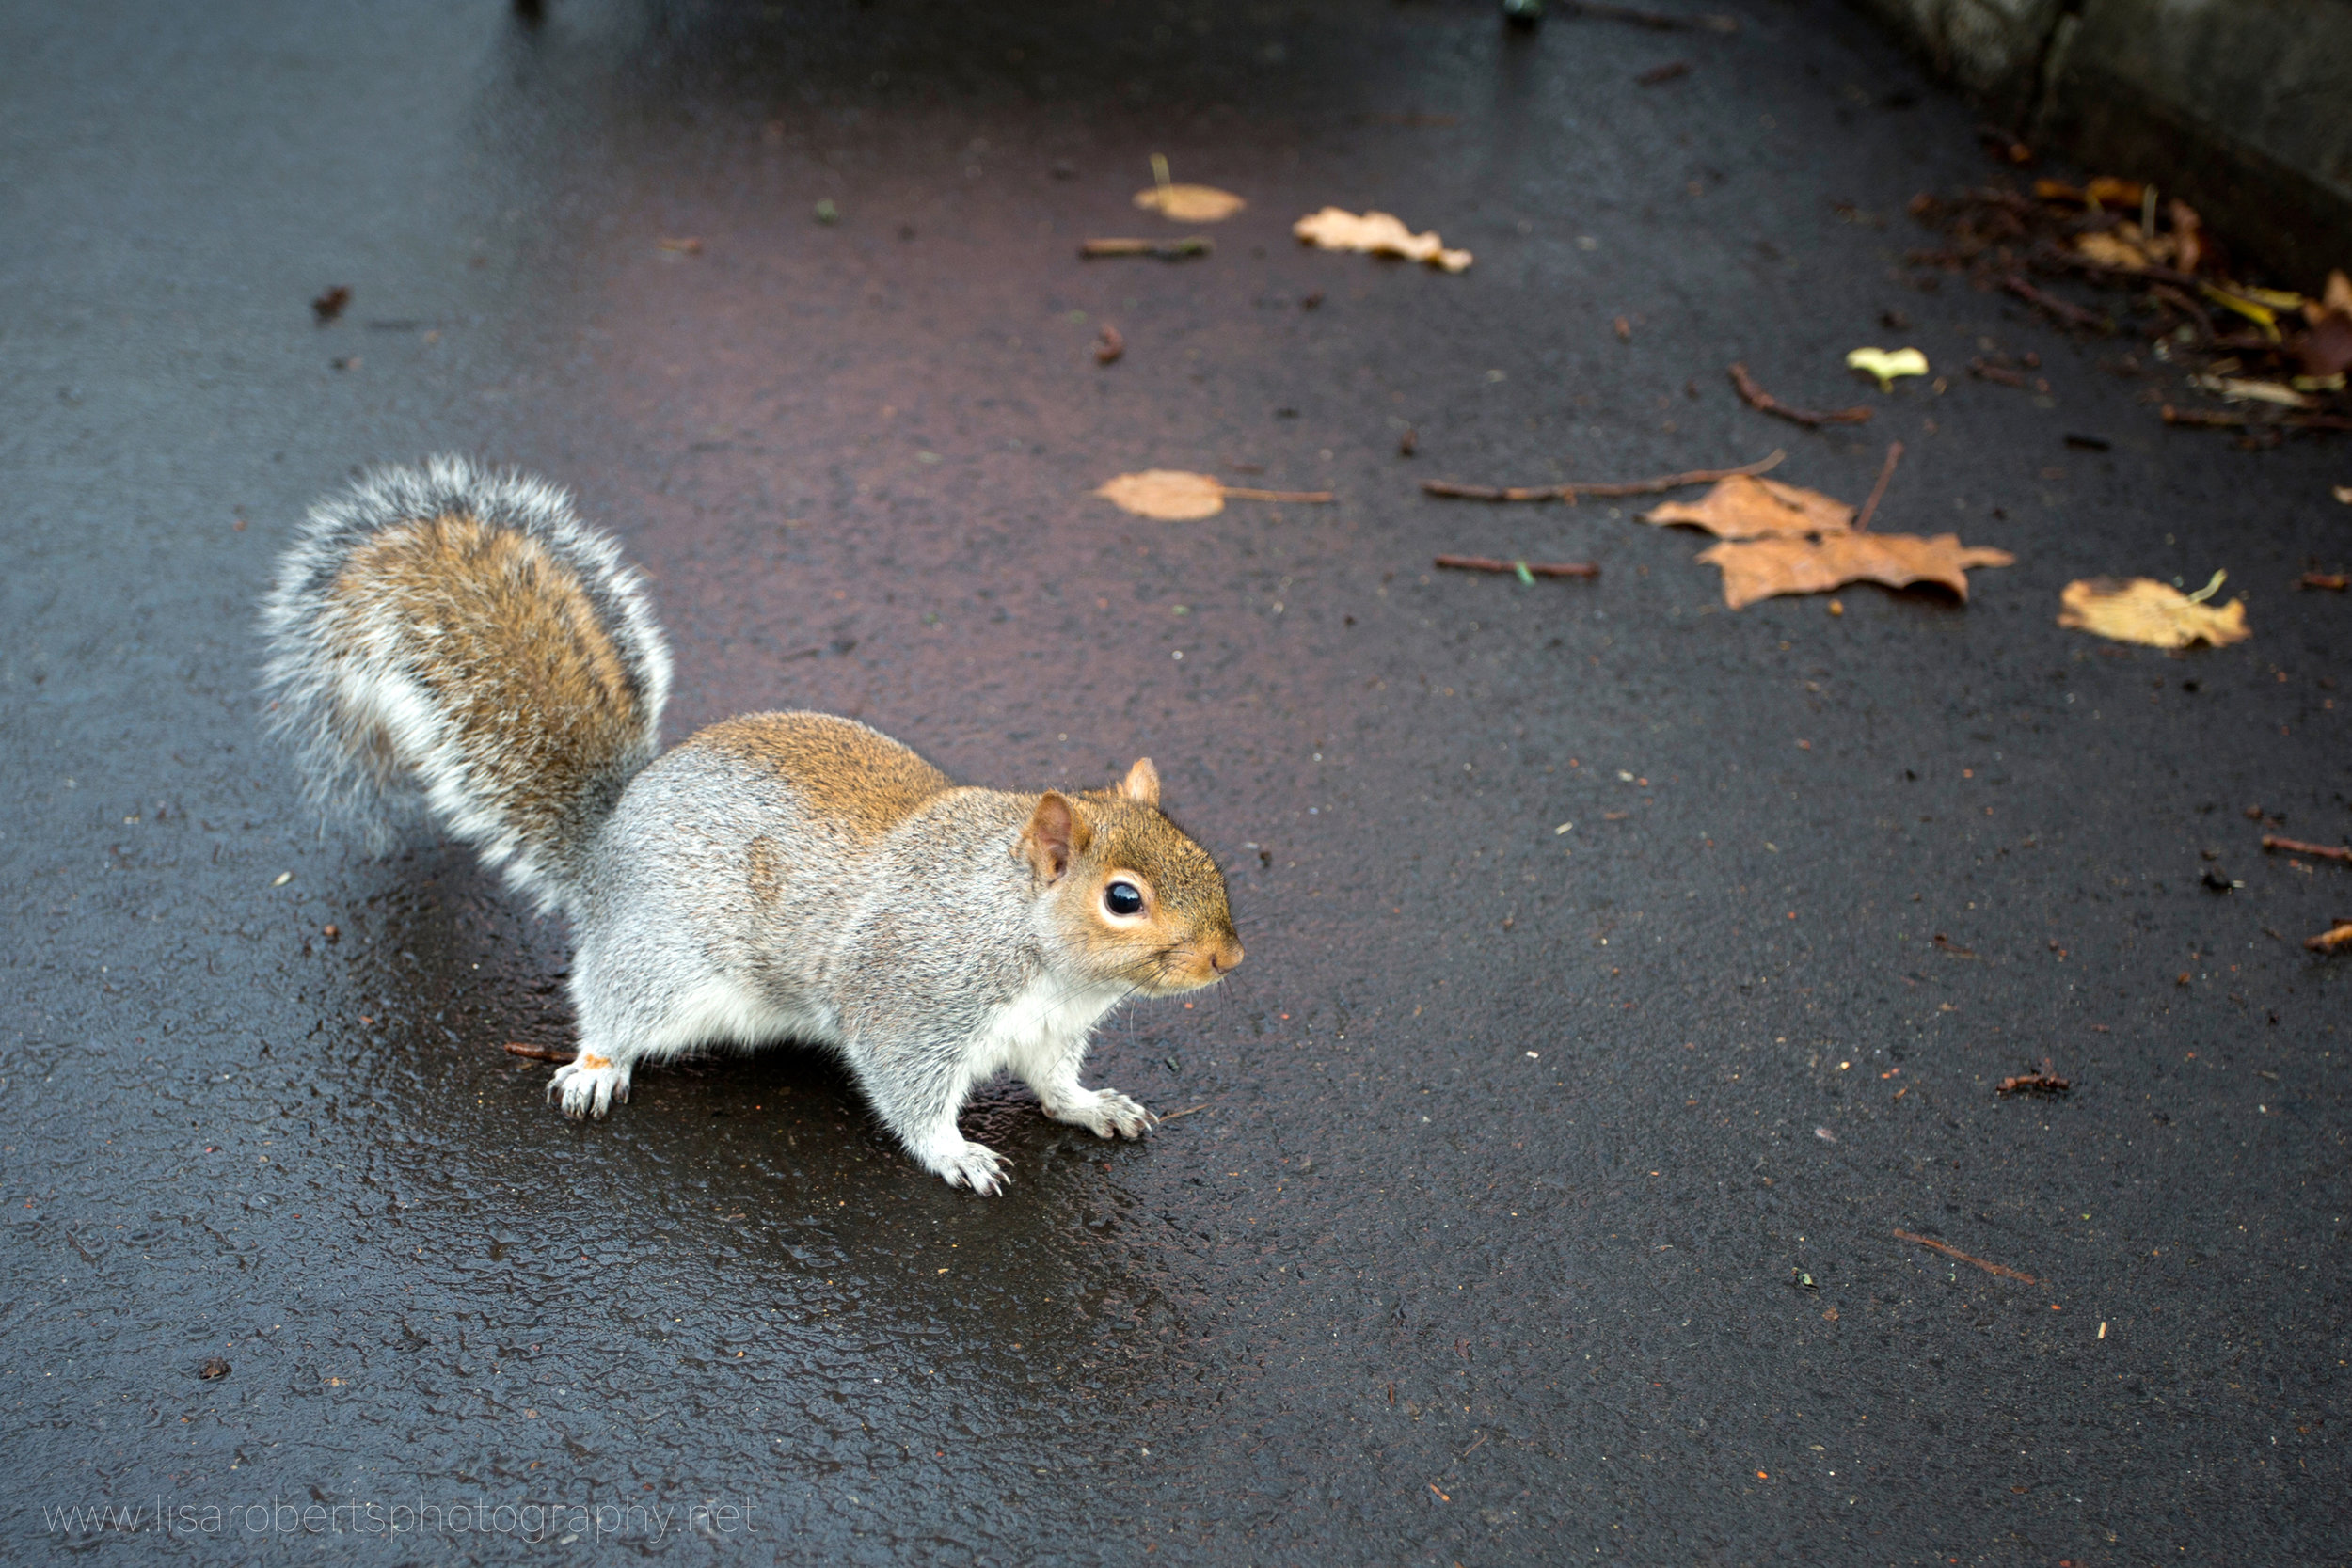  Squirrel on wet path 2 